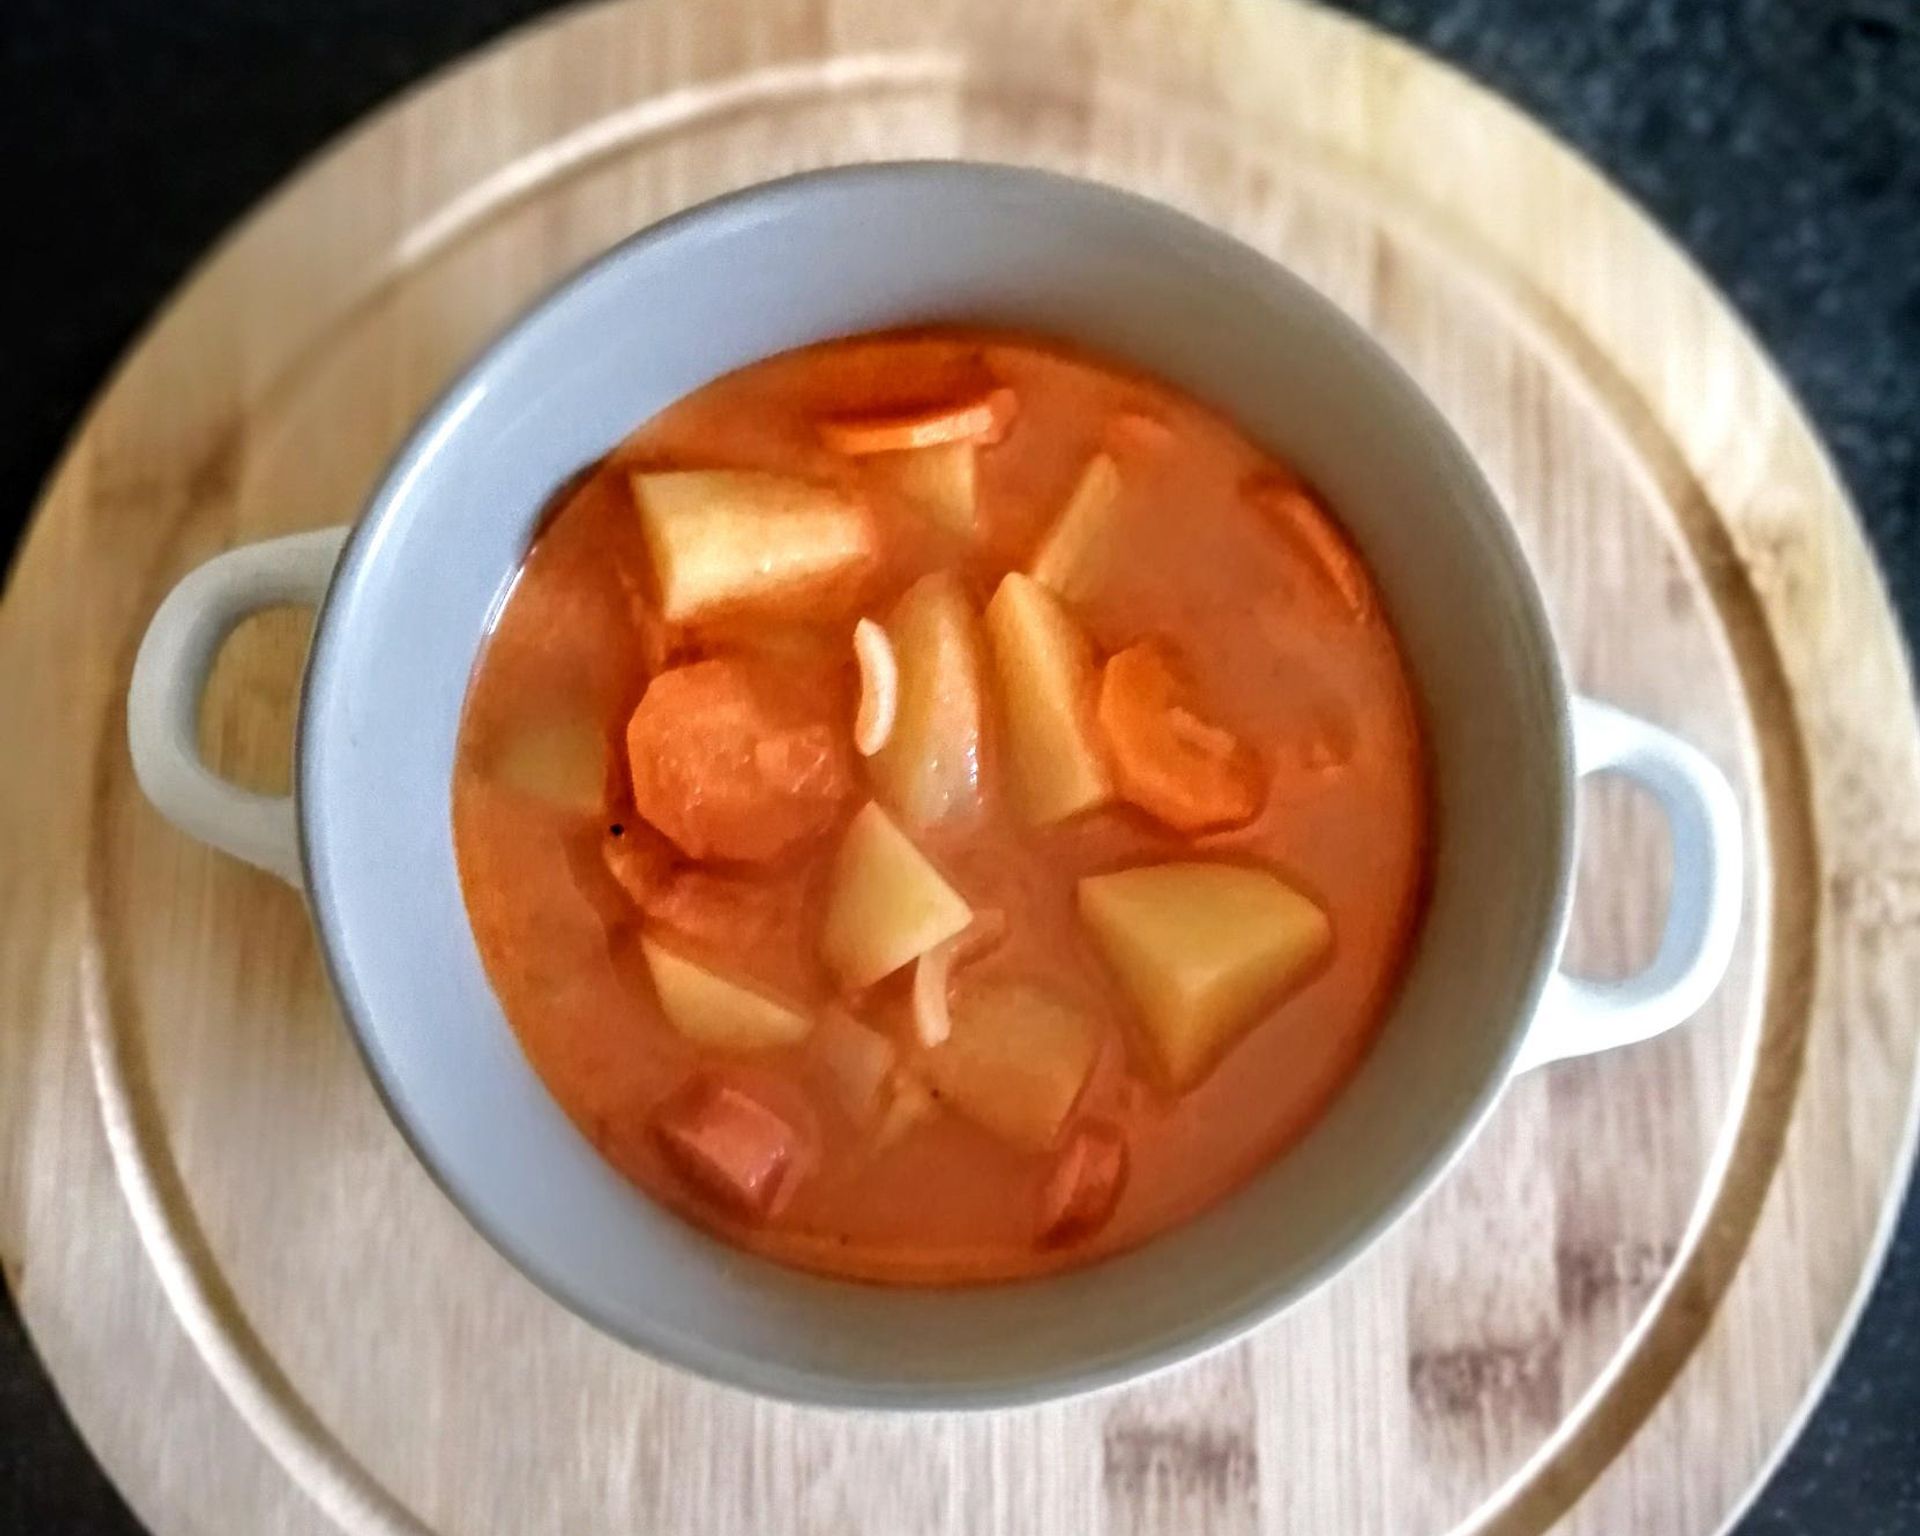 Gulášová polievka so zemiakmi a párky v hrnčeku s uškami na drevenej tácke, ostrá polievka